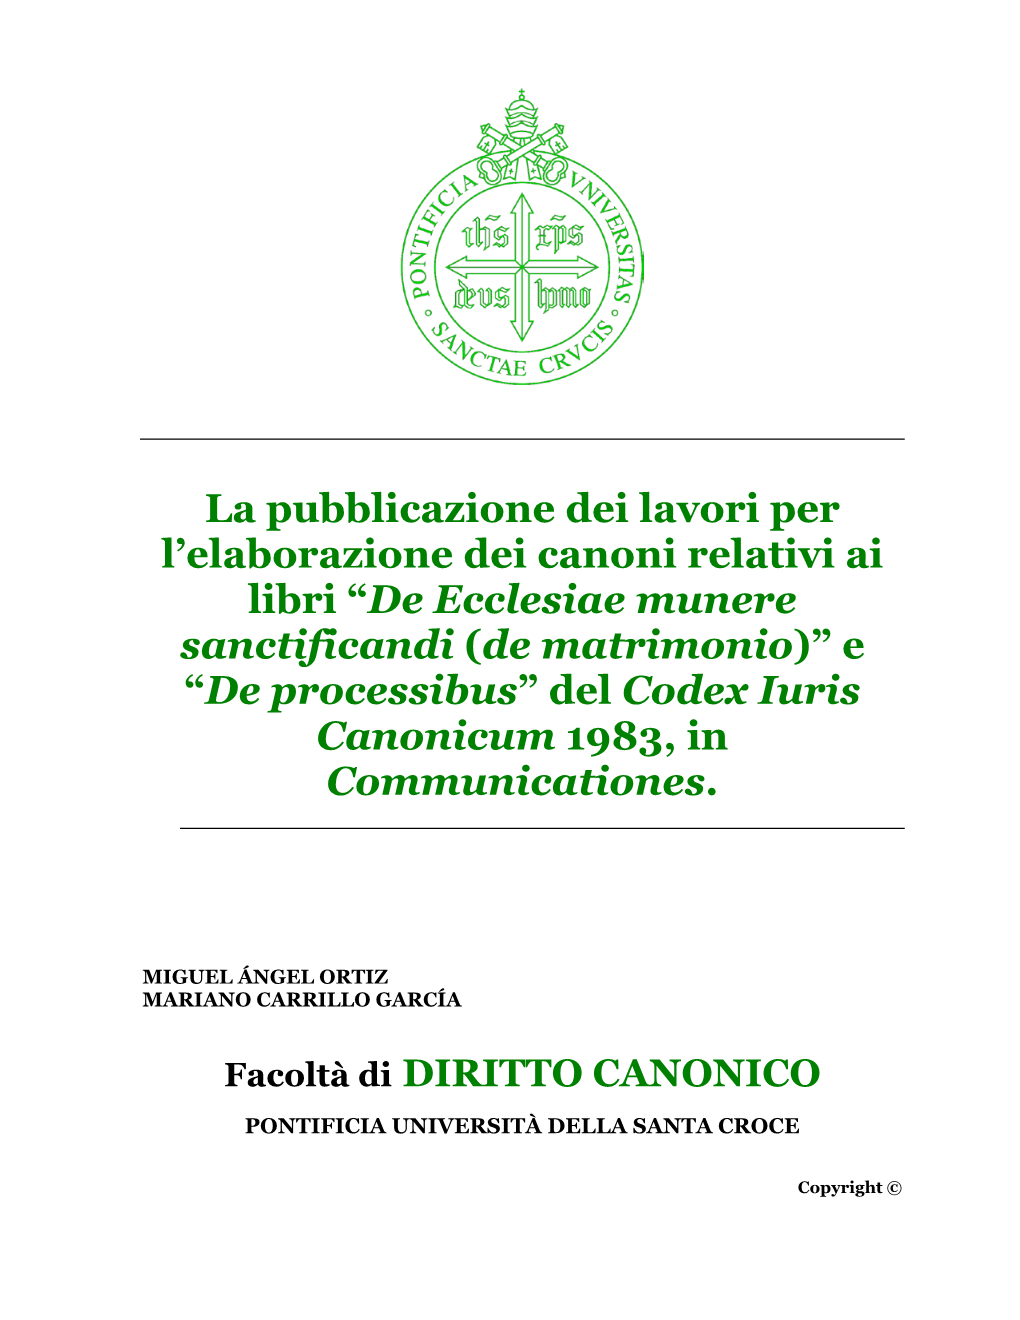 De Ecclesiae Munere Sanctificandi (De Matrimonio)” E “De Processibus” Del Codex Iuris Canonicum 1983, in Communicationes